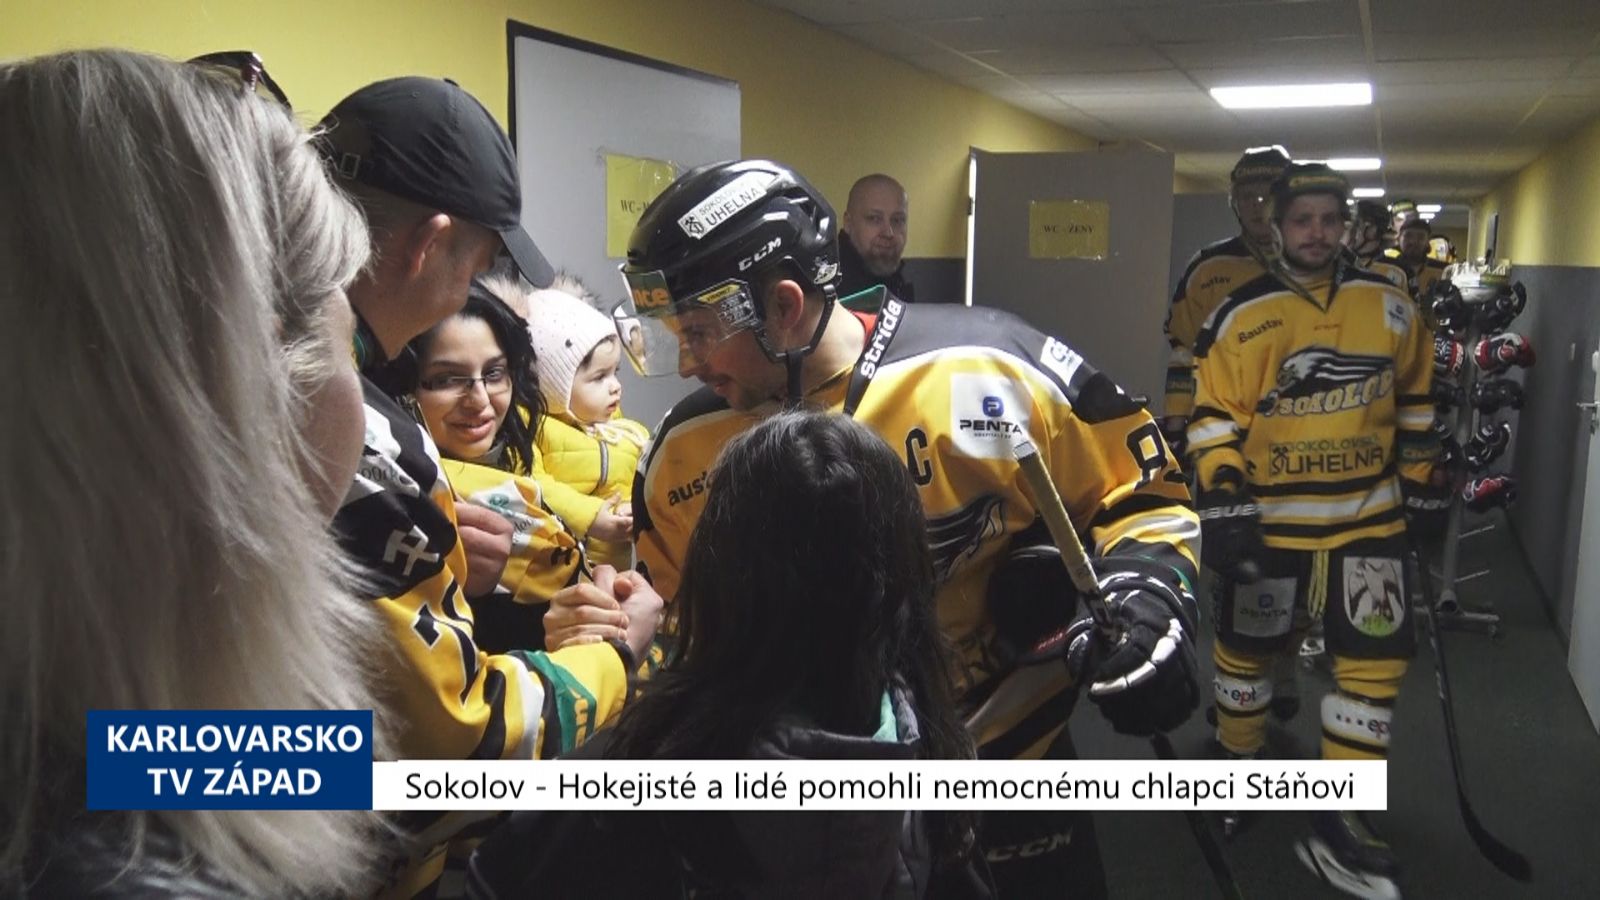 Sokolov: Hokejisté a lidé pomohli nemocnému chlapci Stáňovi (TV Západ)